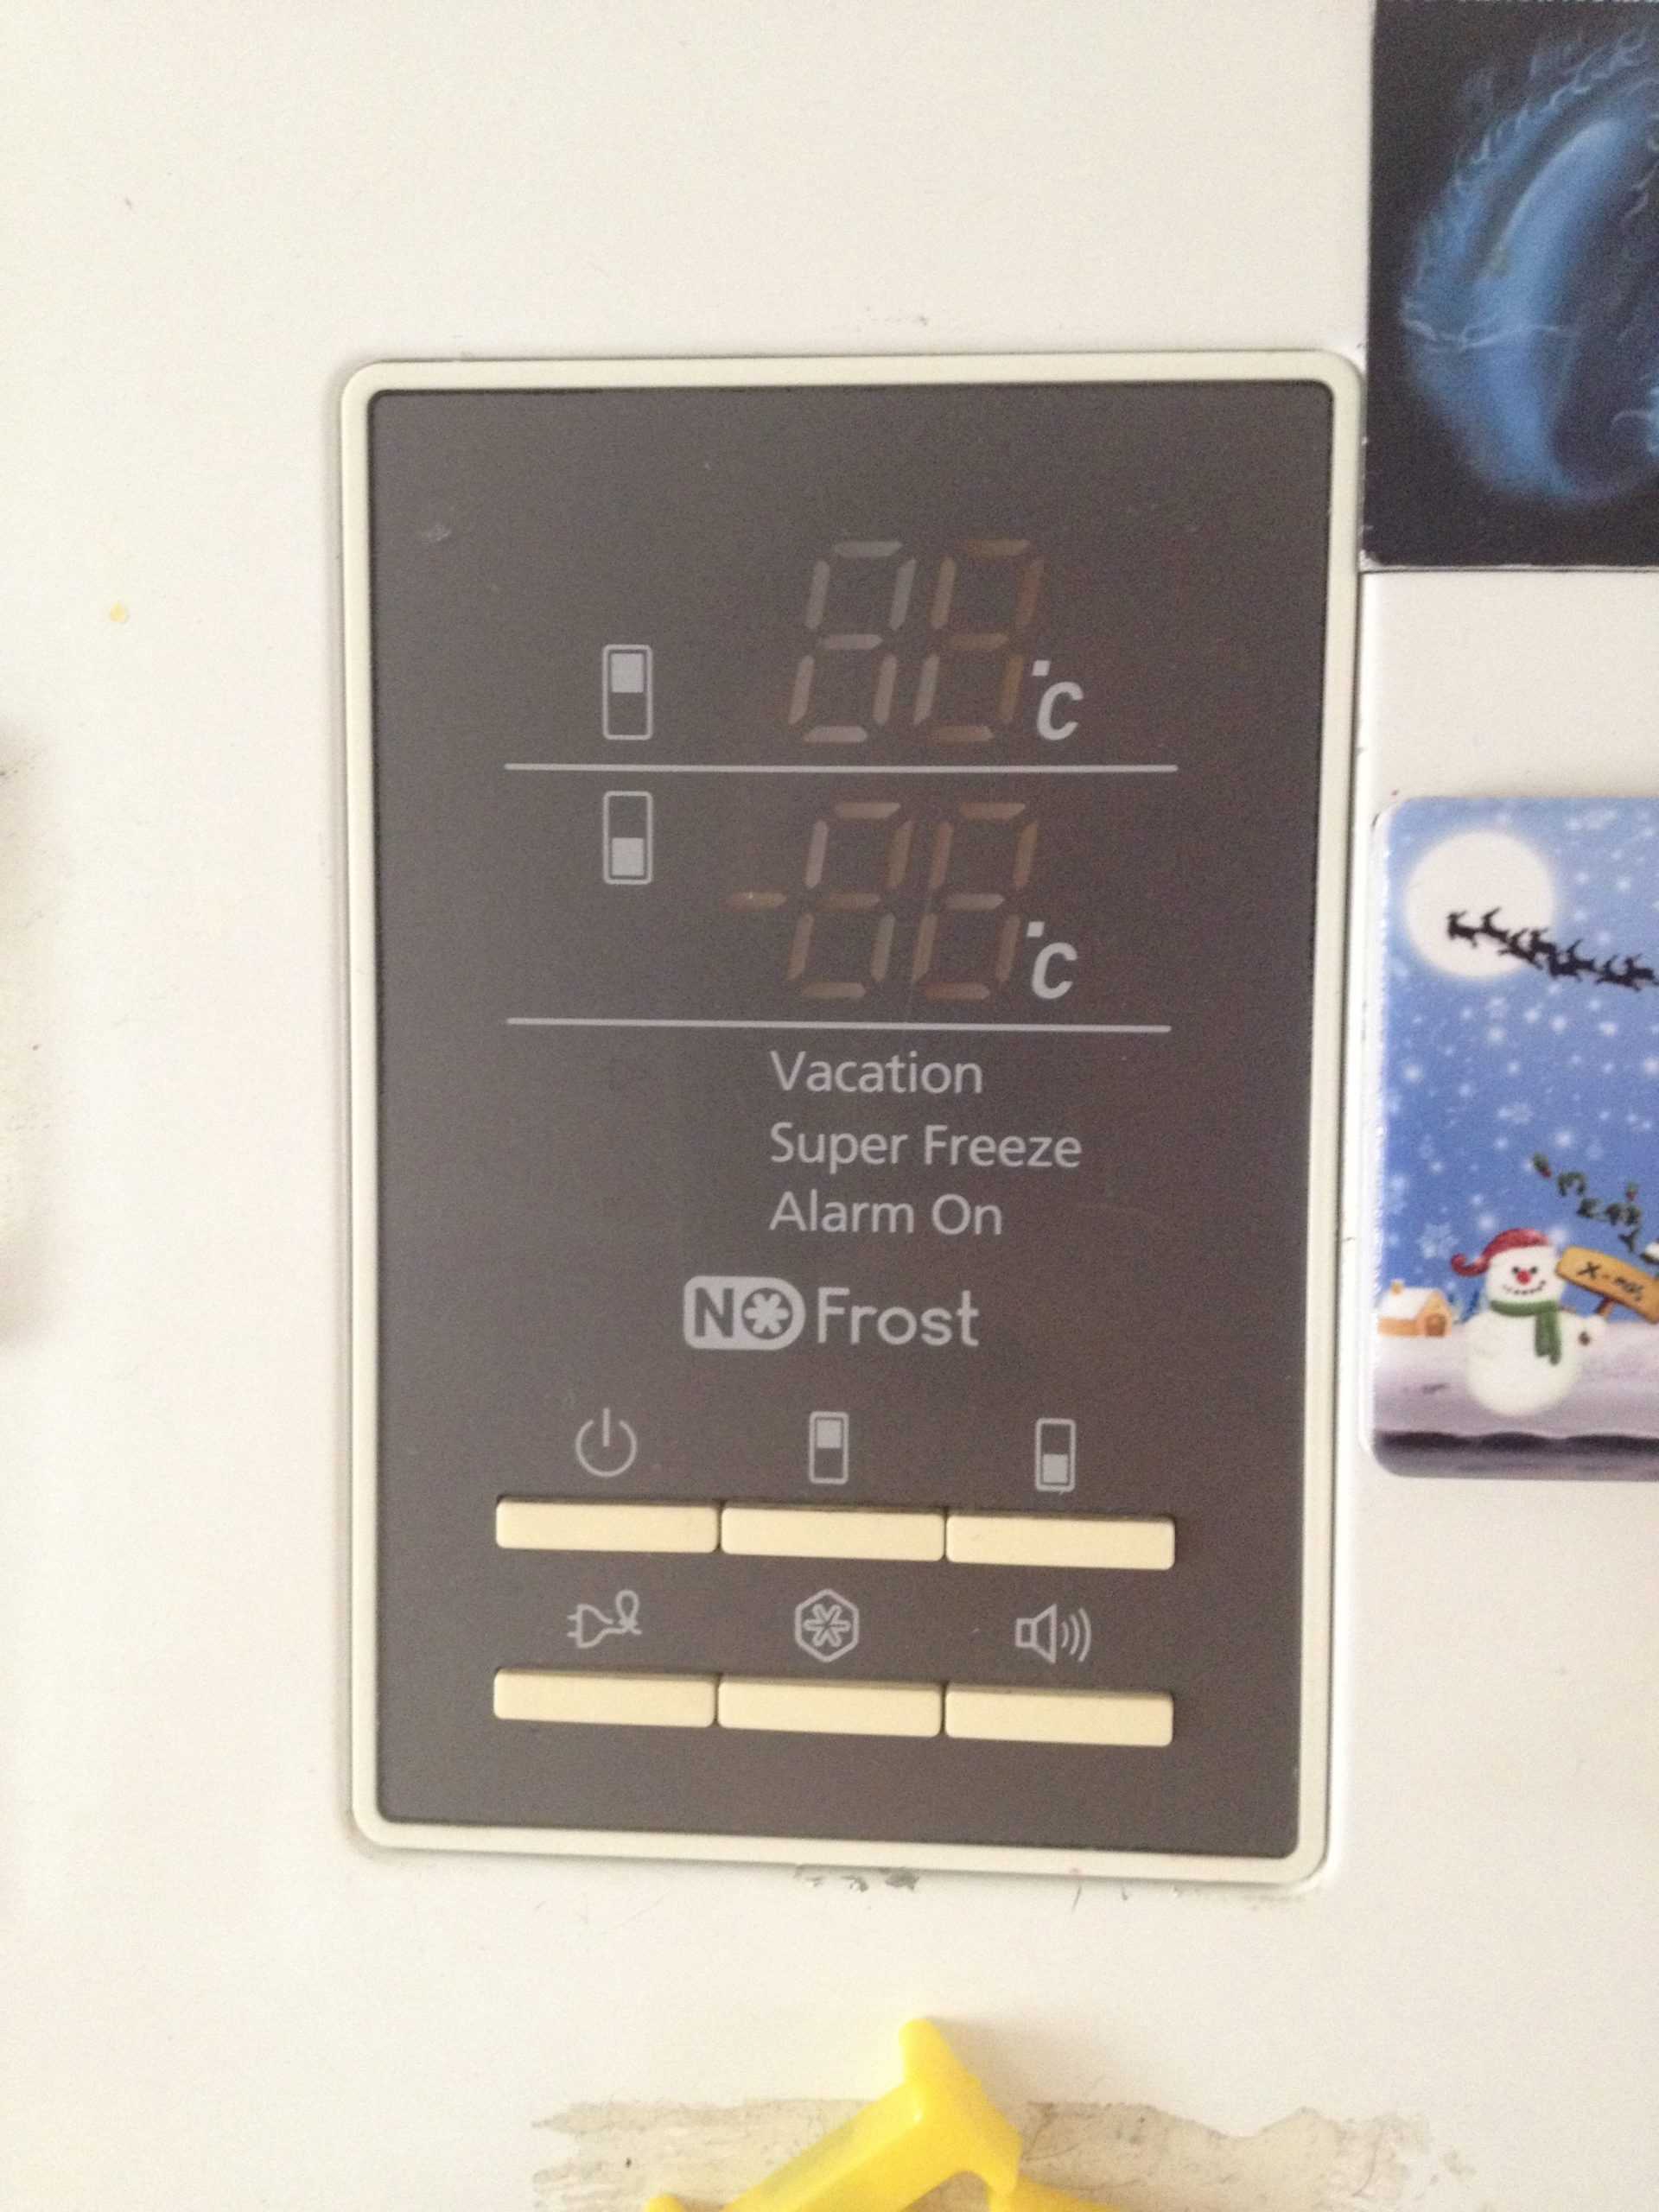 Холодильник no frost: особенности системы, достоинства и недостатки